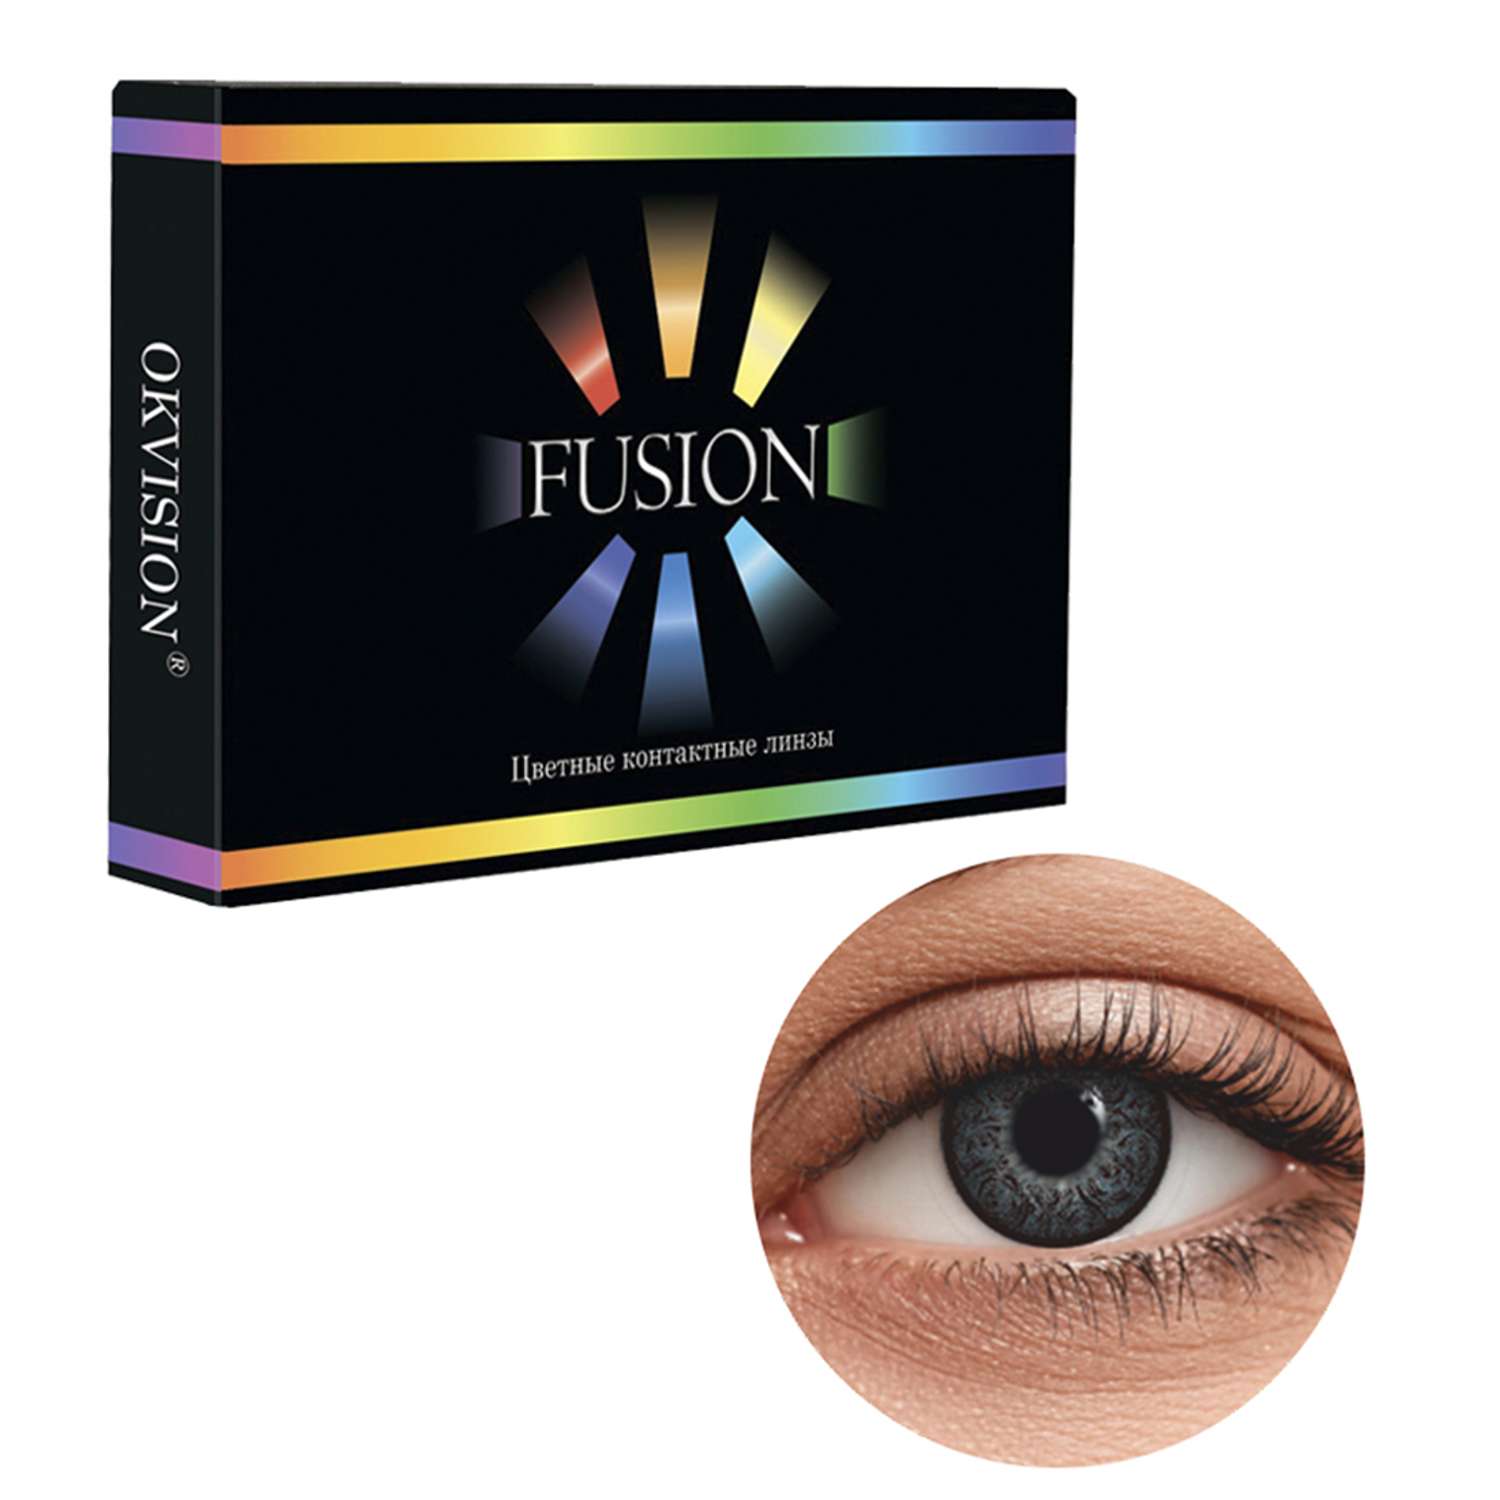 Цветные контактные линзы OKVision Fusion monthly R 8.6 -3.50 цвет Ivory Black 2 шт 1 месяц - фото 1